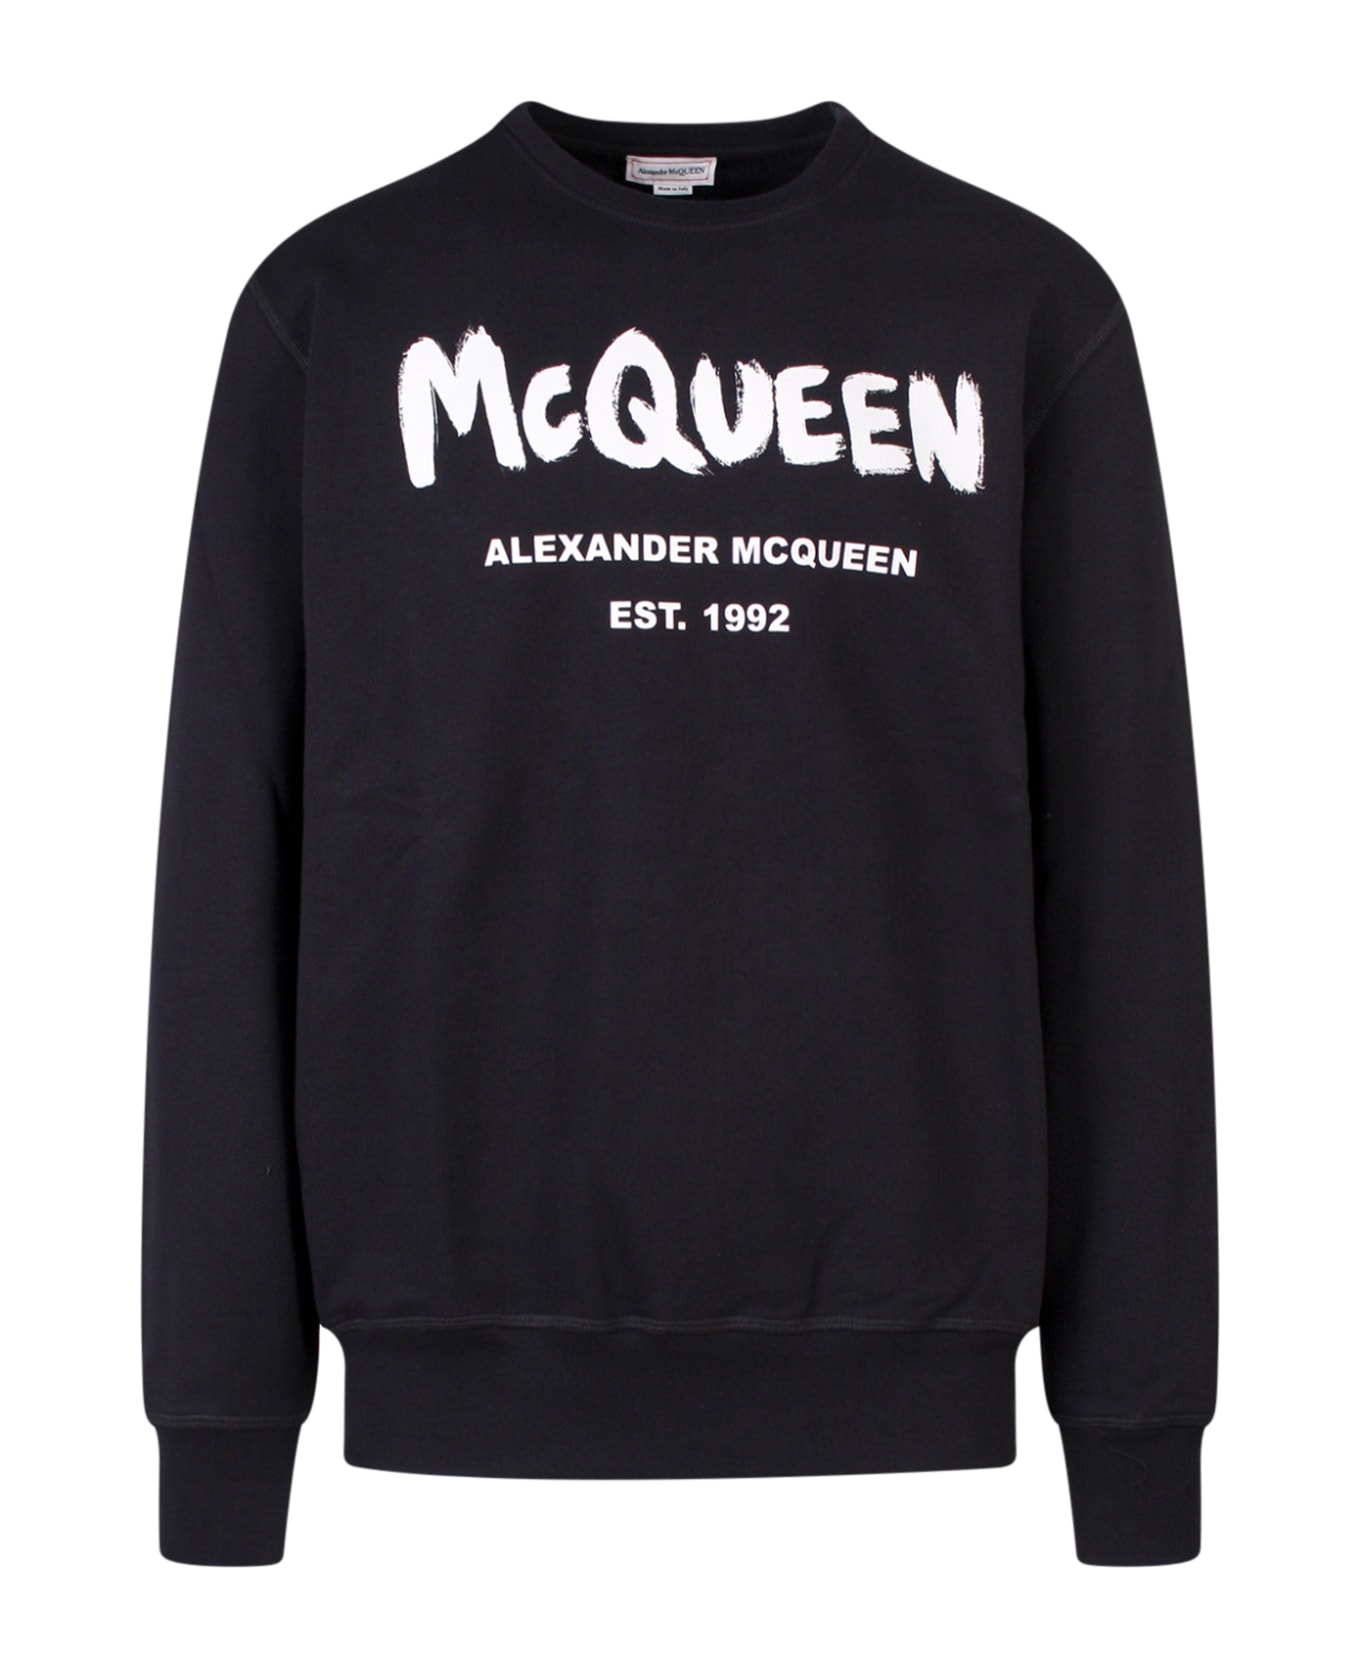 Alexander McQueen Sweatshirt - BLACK/IVORY